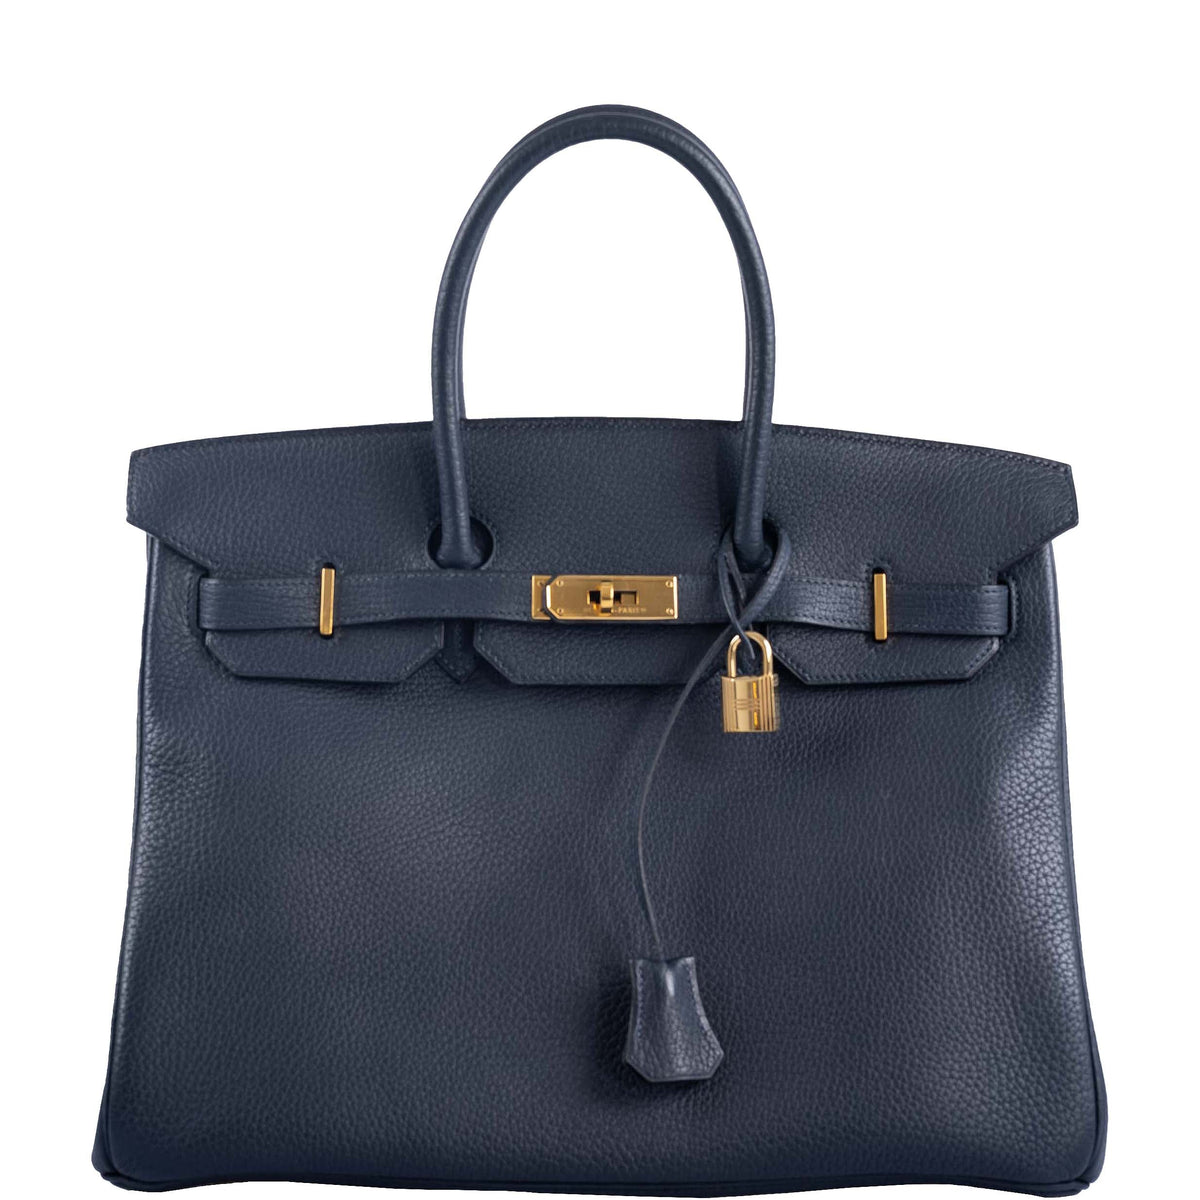 Hermes Birkin bag 35 Blue nuit Togo leather Silver hardware